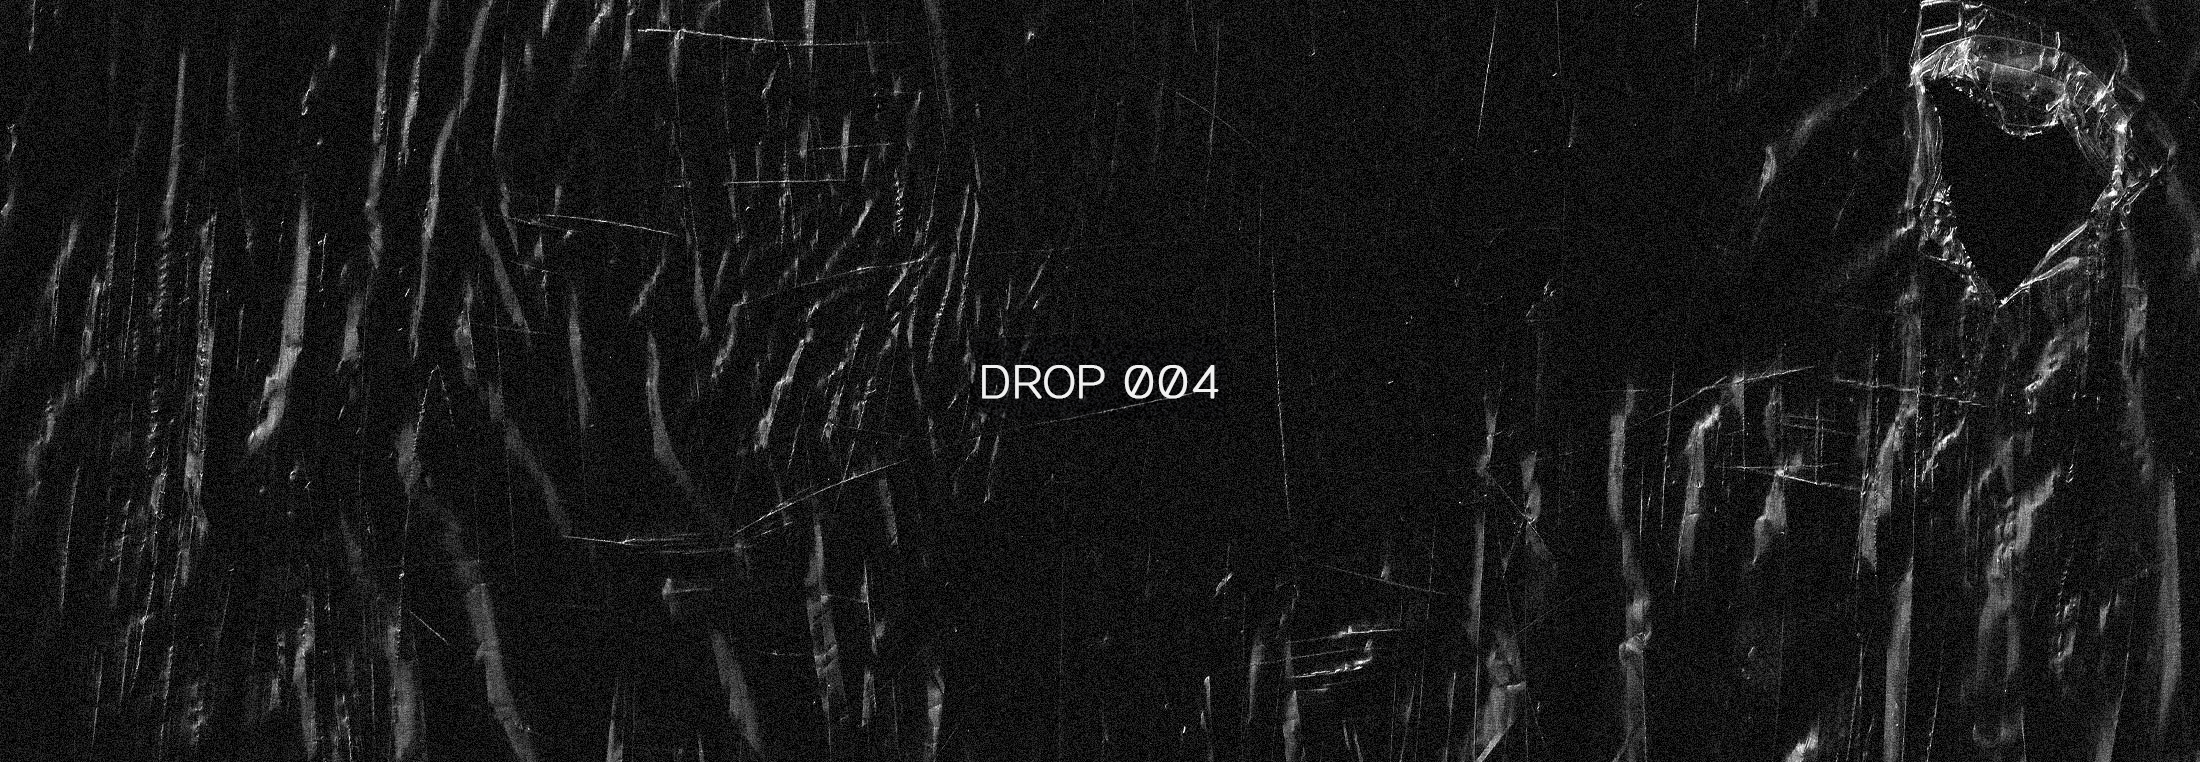 DROP 004